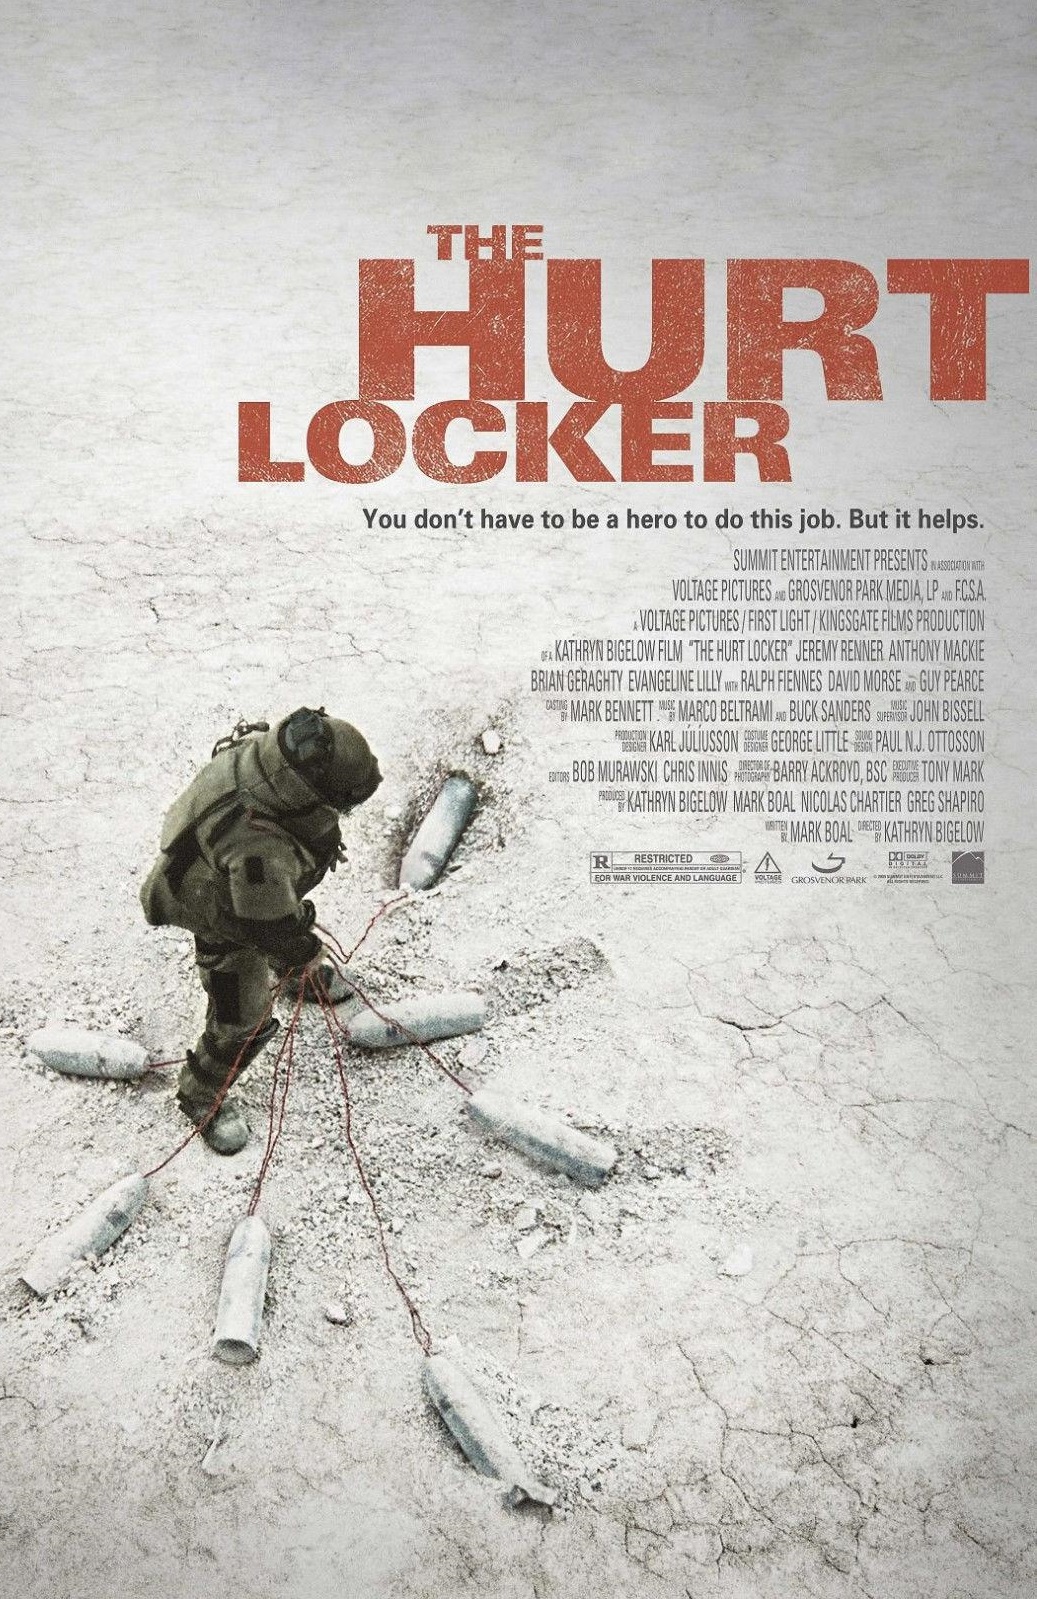 The Hurt Locker 2009 Tamil Dubbed Thriller Movie Online